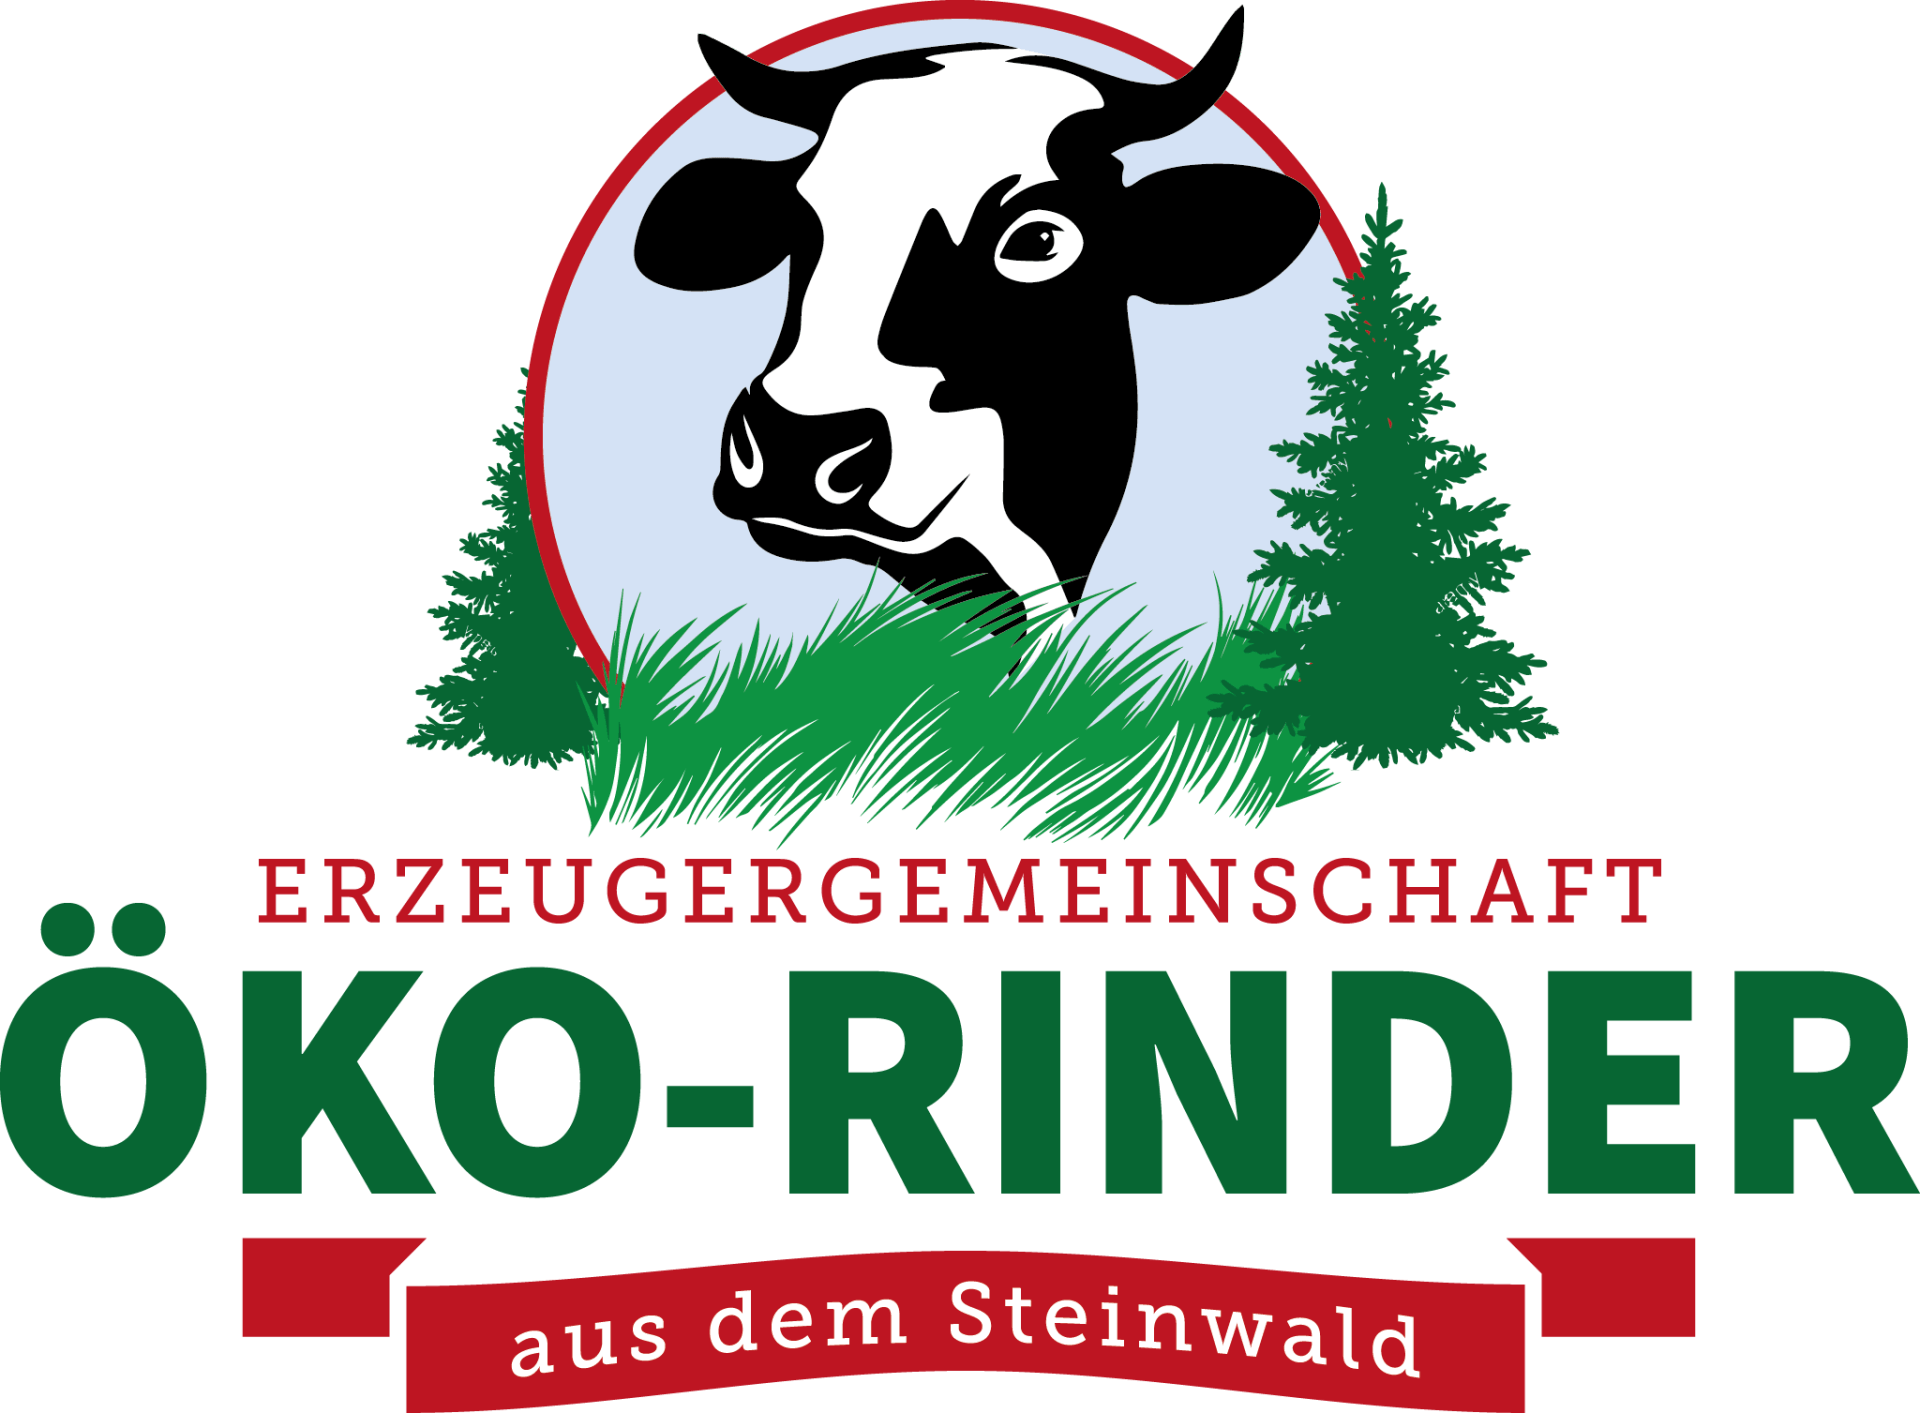 Erzeugergemeinschaft, Öko-Rinder aus dem Steinwald,  Bio-Rindfleisch, ökologische Landwirtschaft, regionale Vermarktung